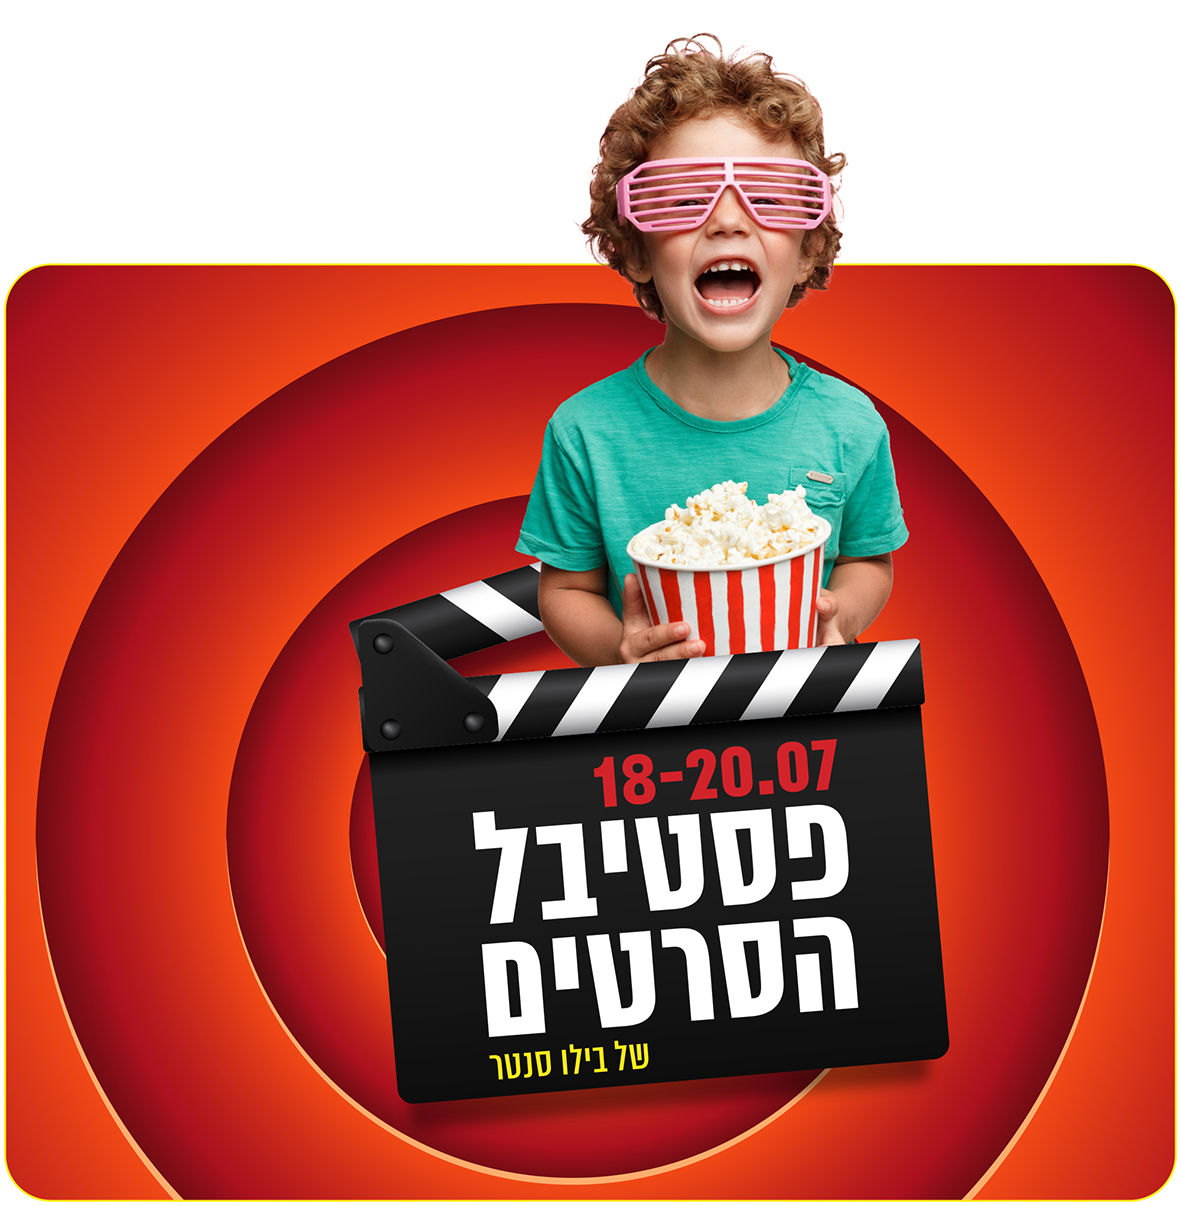 'פסטיבל סרטים' ראשון מסוגו בישראל יפתח  לילדים ובני נוער למשך 3 ימים